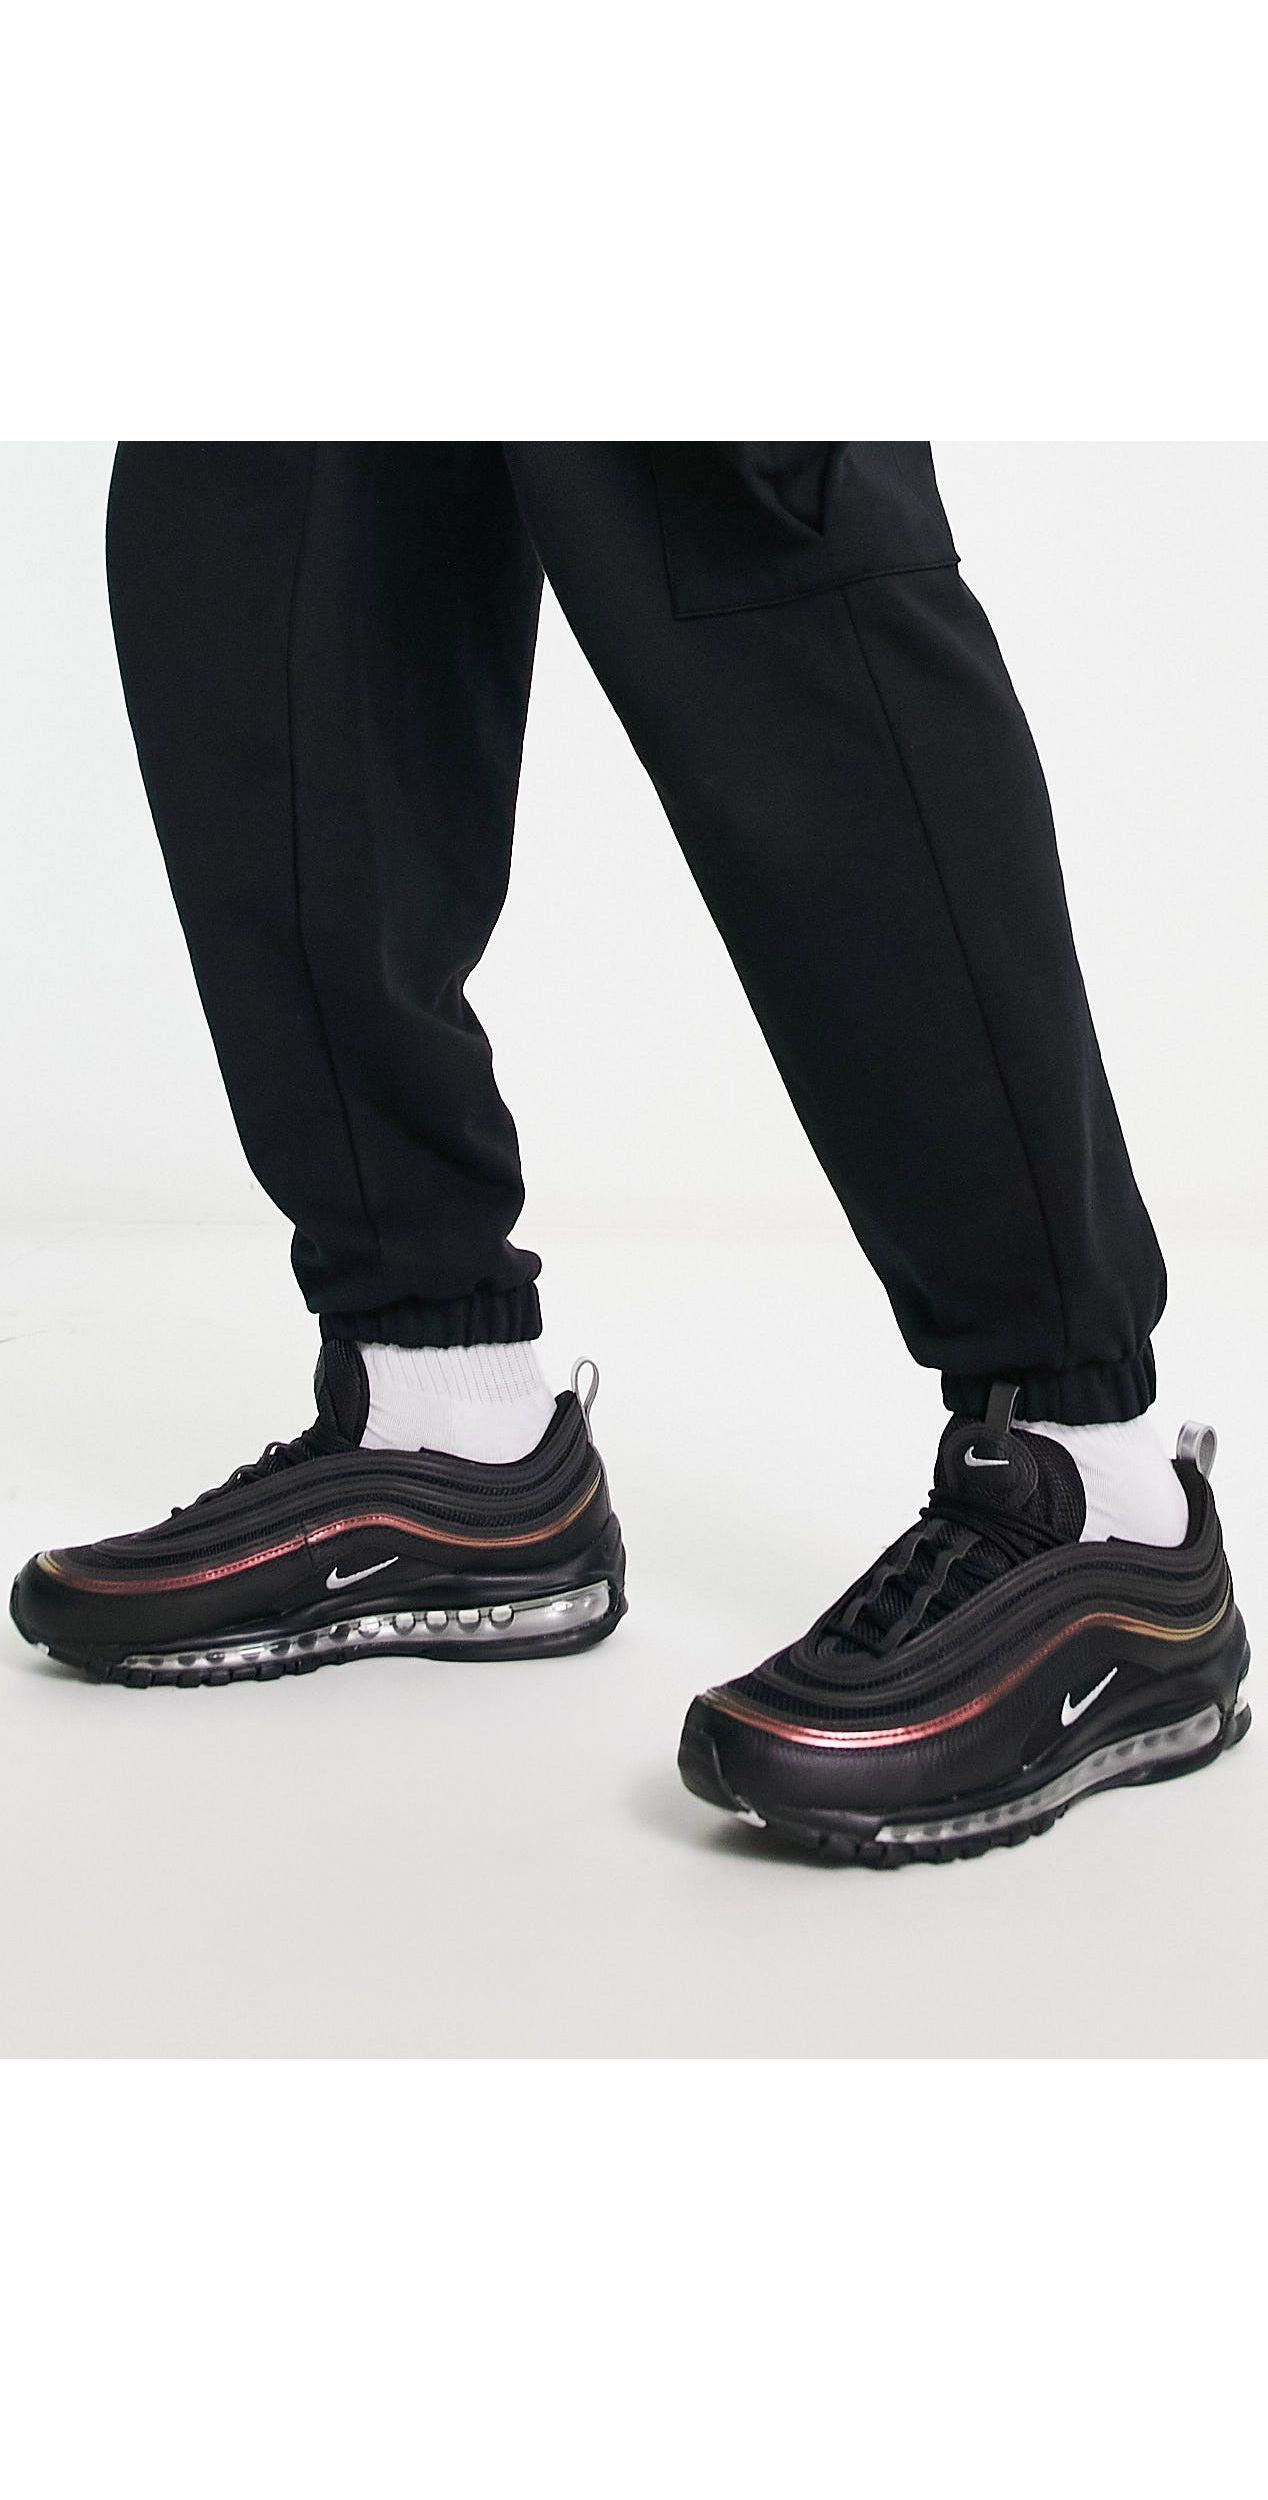 regla atómico Bien educado Zapatillas en color y rojo air max 97 Nike de hombre de color Negro | Lyst